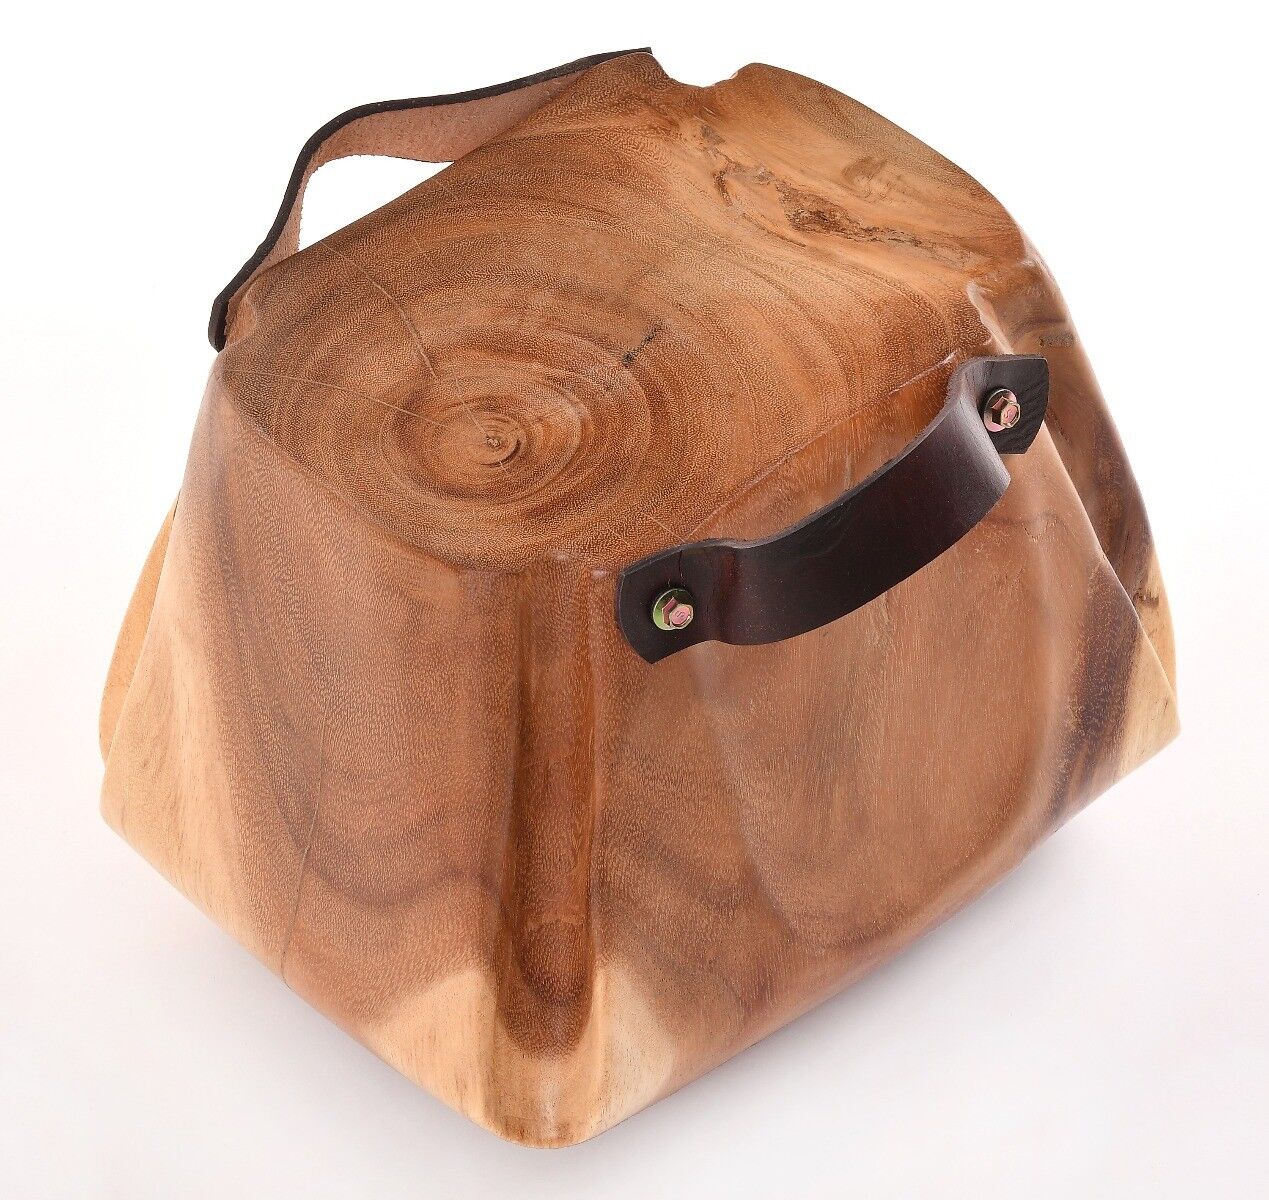 Stołek drewniany w formie torby Natural Secret 25x30x25 cm